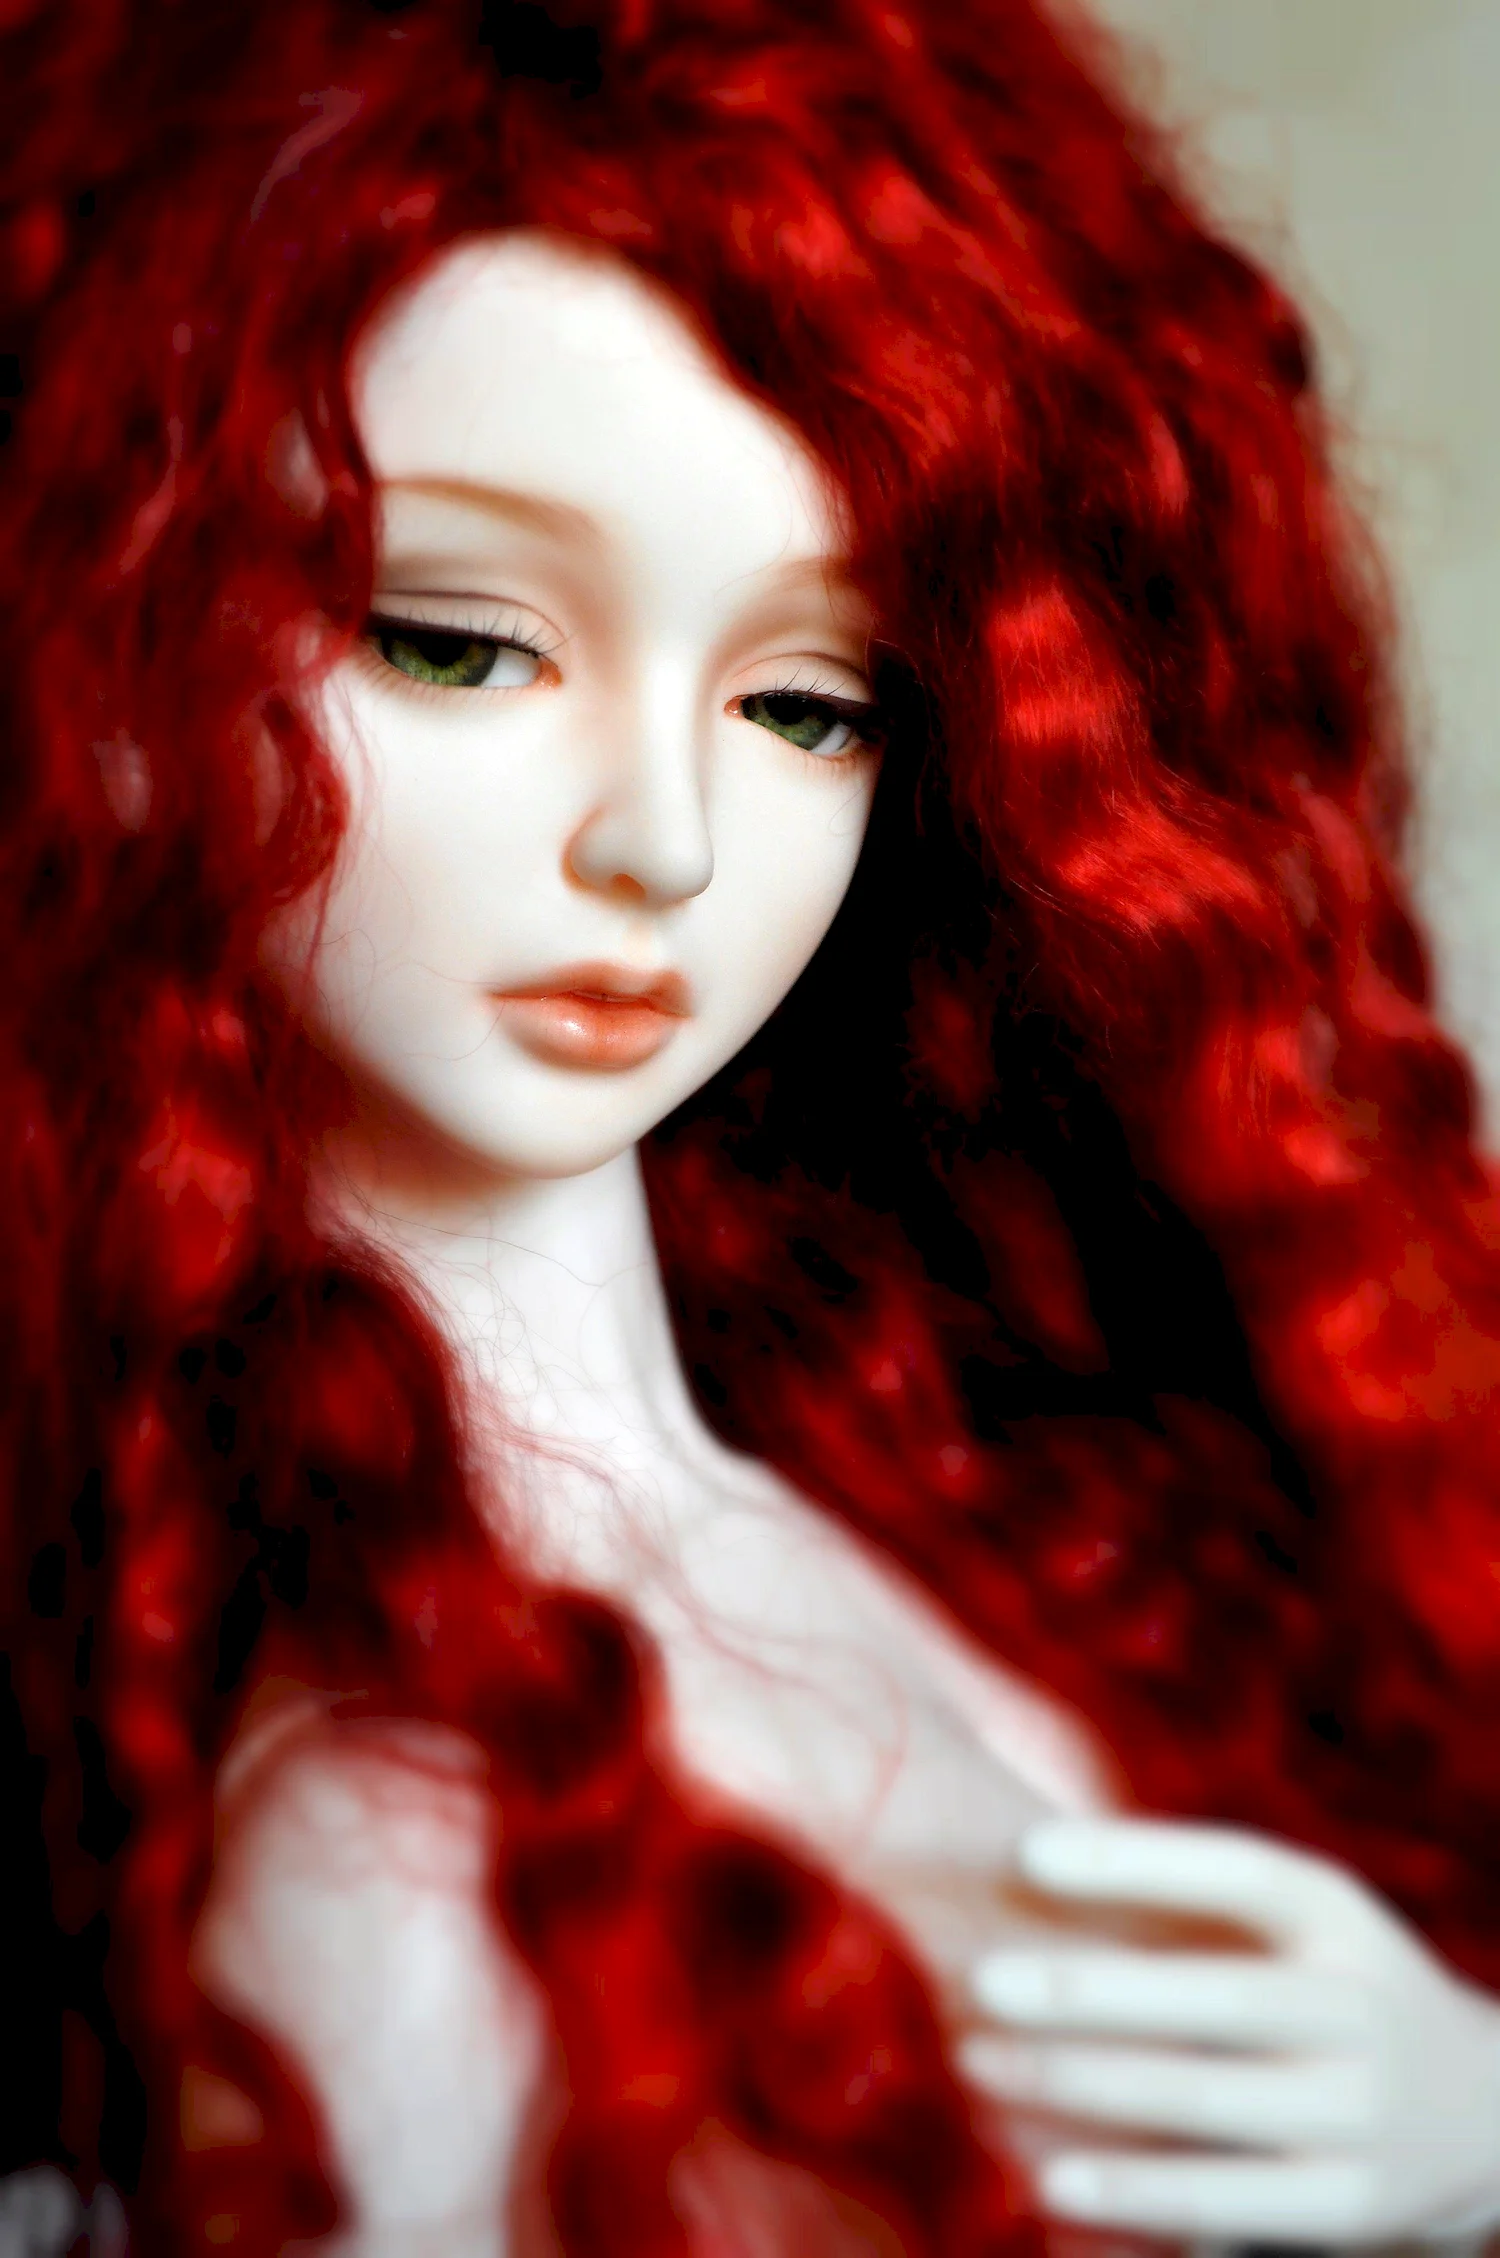 Фарфоровая кукла с красными волосами